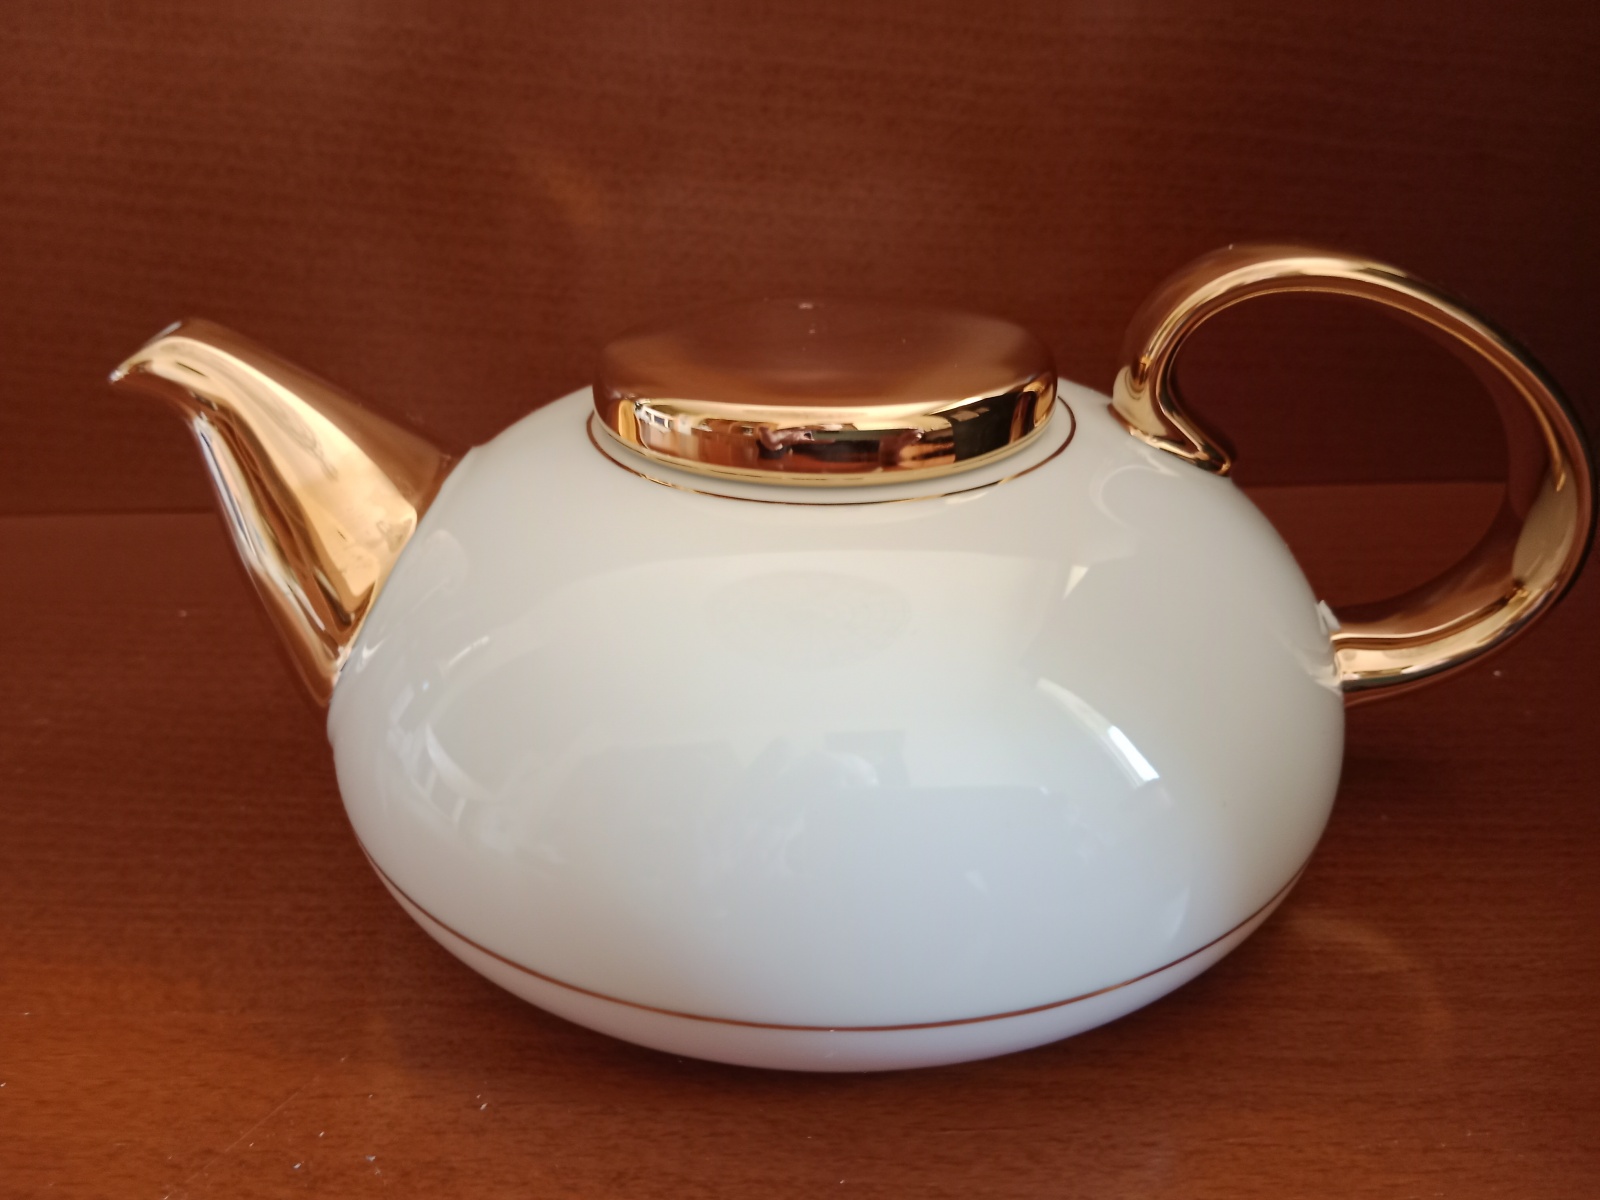 Čaje Mlesna Čajová zlacená konvice obsah 0,5 l. 22 karátovým zlatem Noritake - Mlesna pravý čaj z Cejlonu